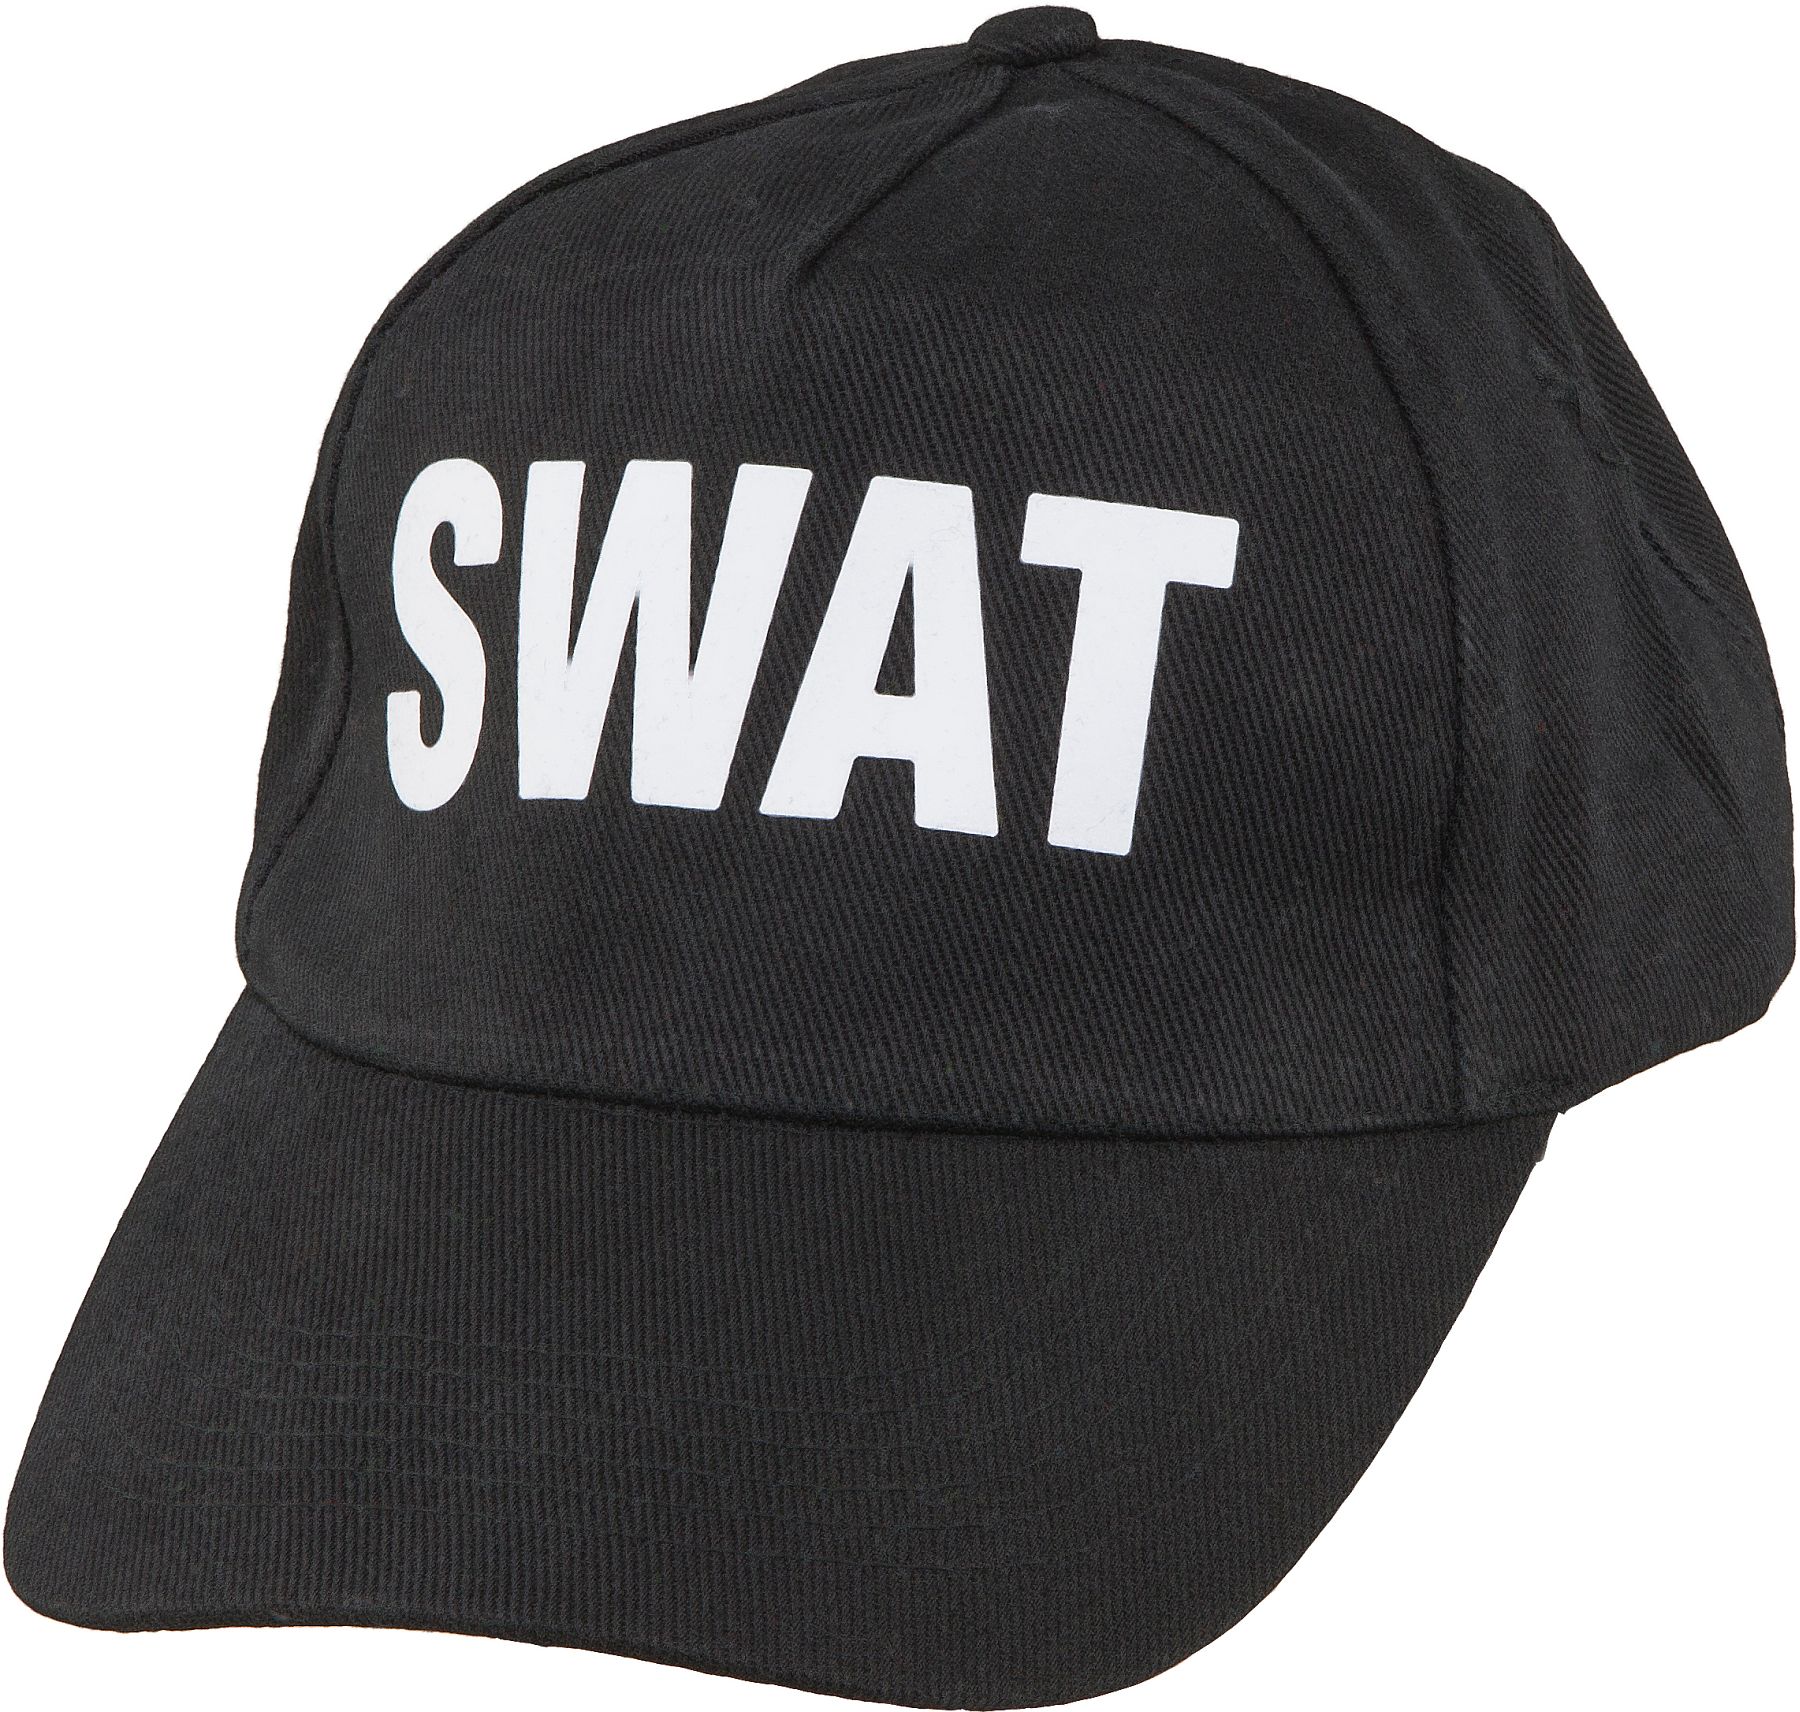 Cap SWAT